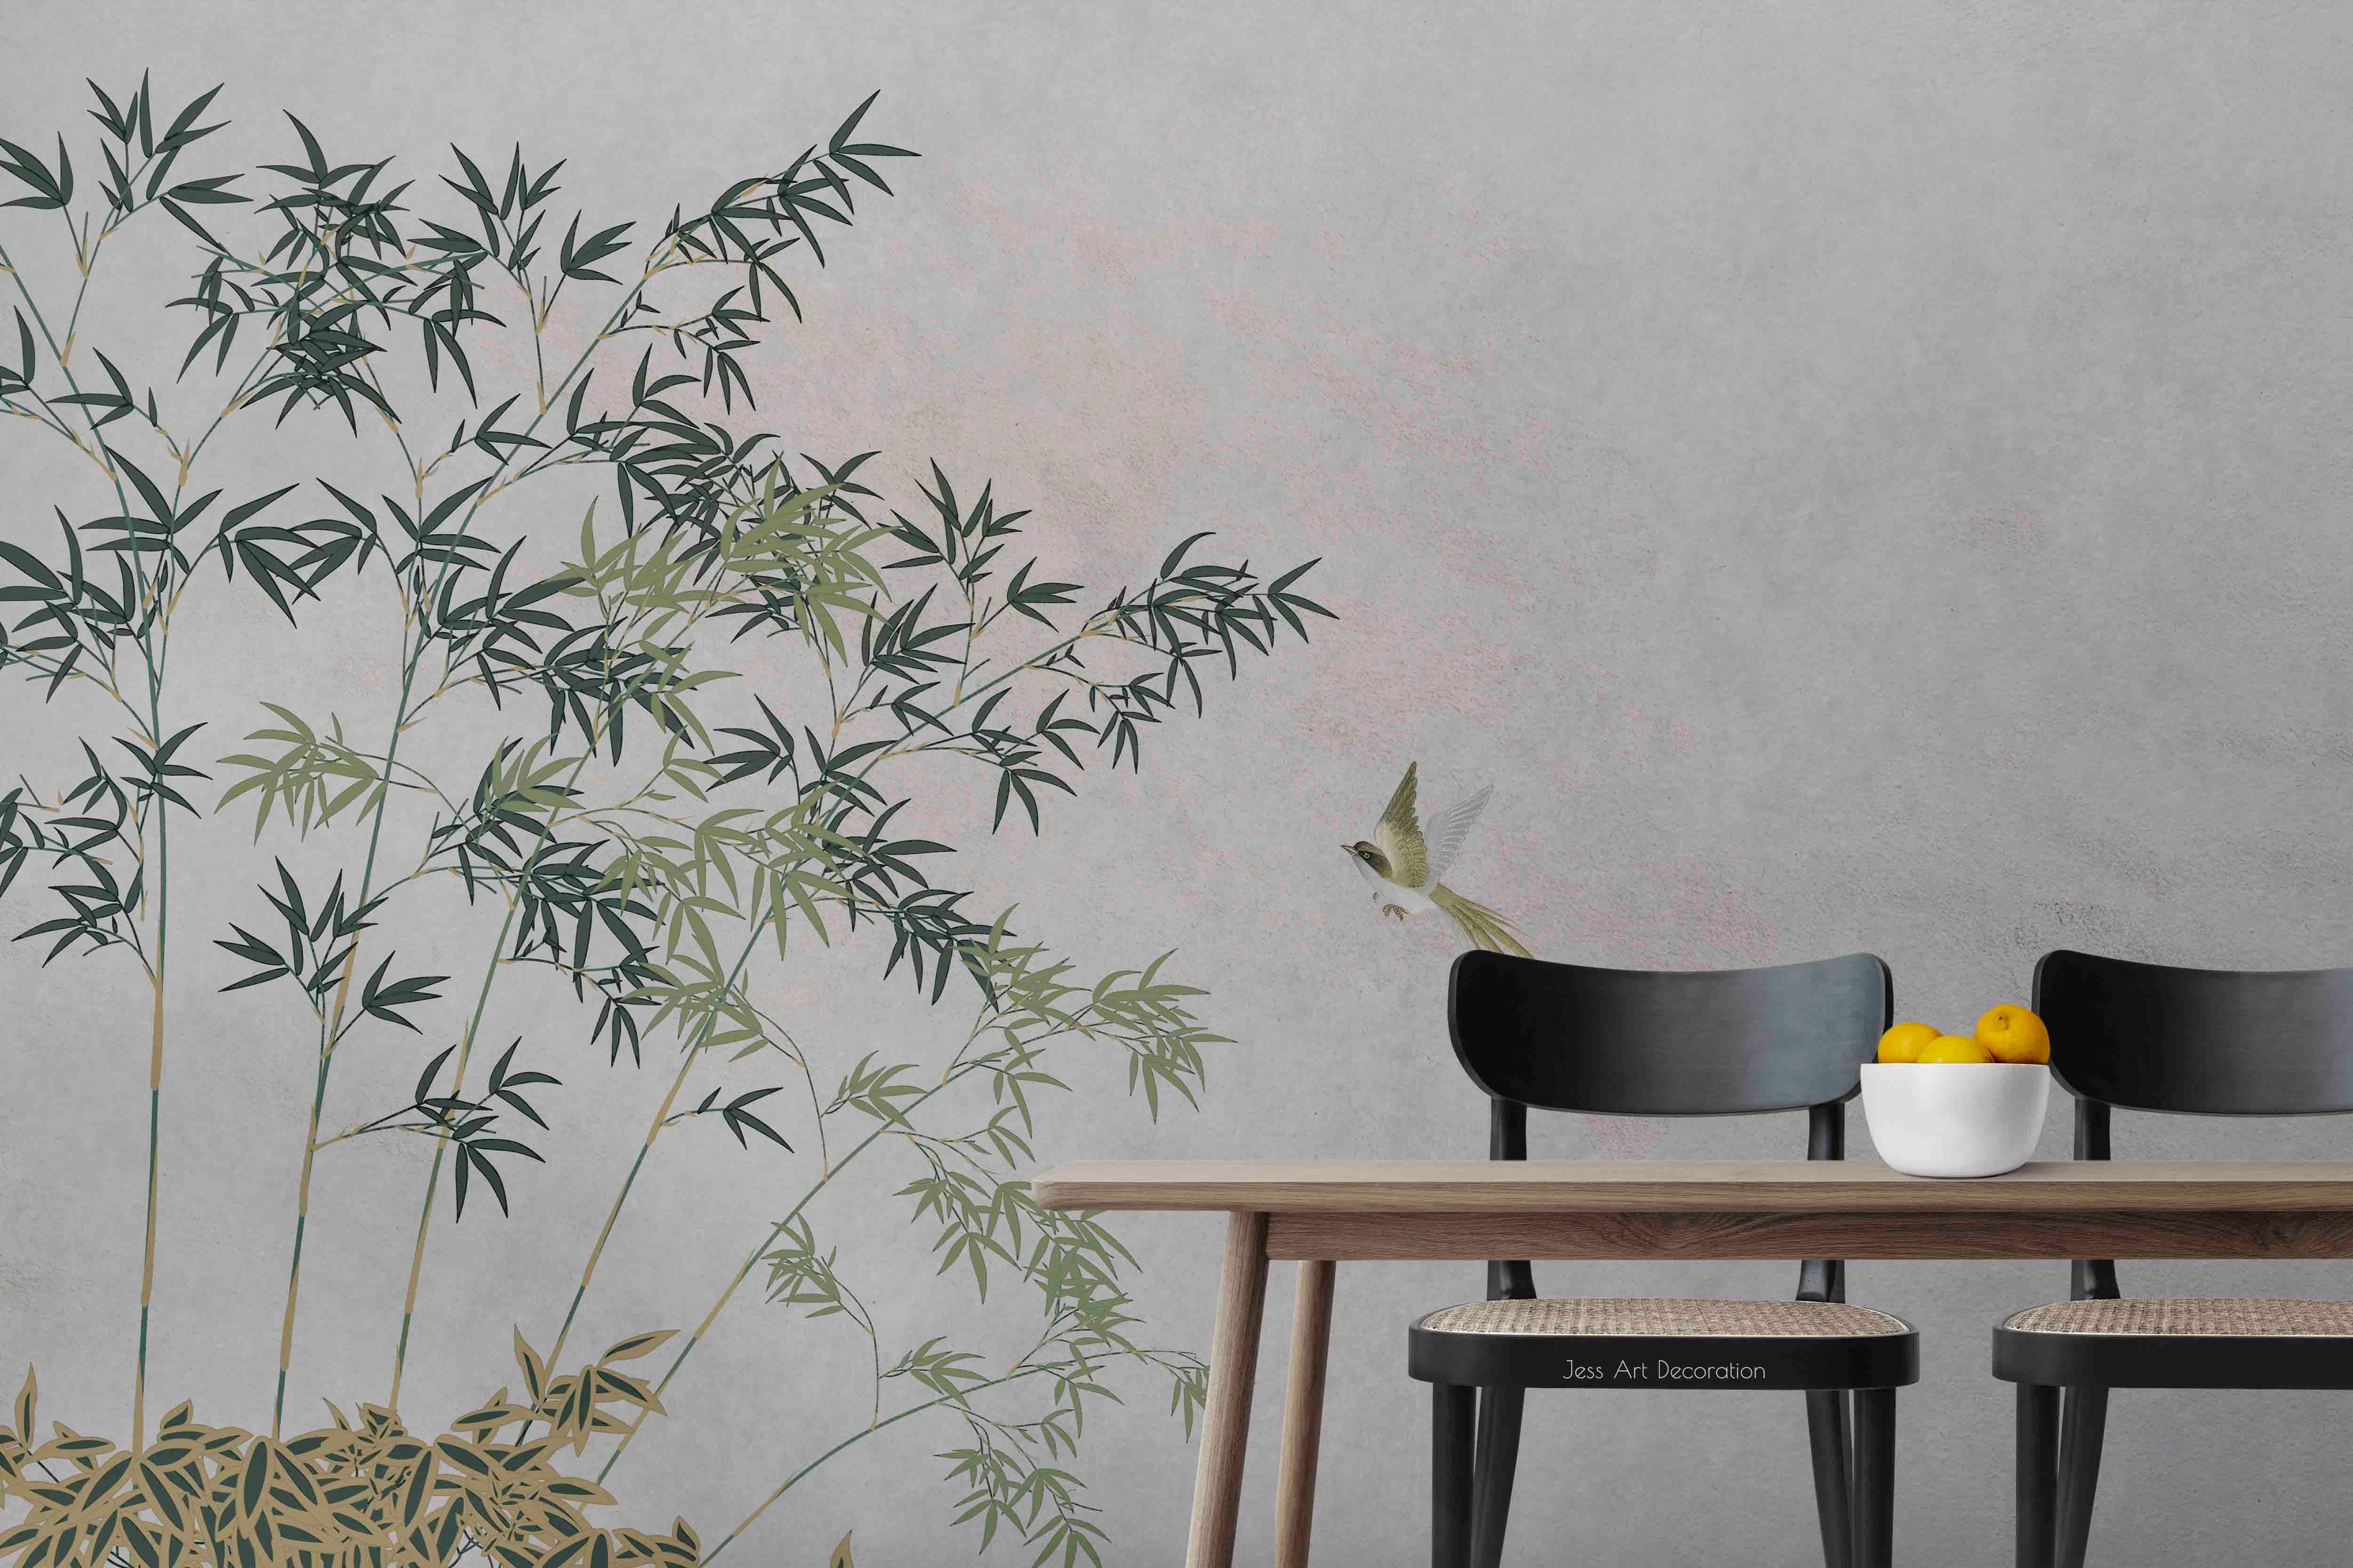 3D Chinese Bamboo Bird Wall Mural Wallpaper sww 192- Jess Art Decoration